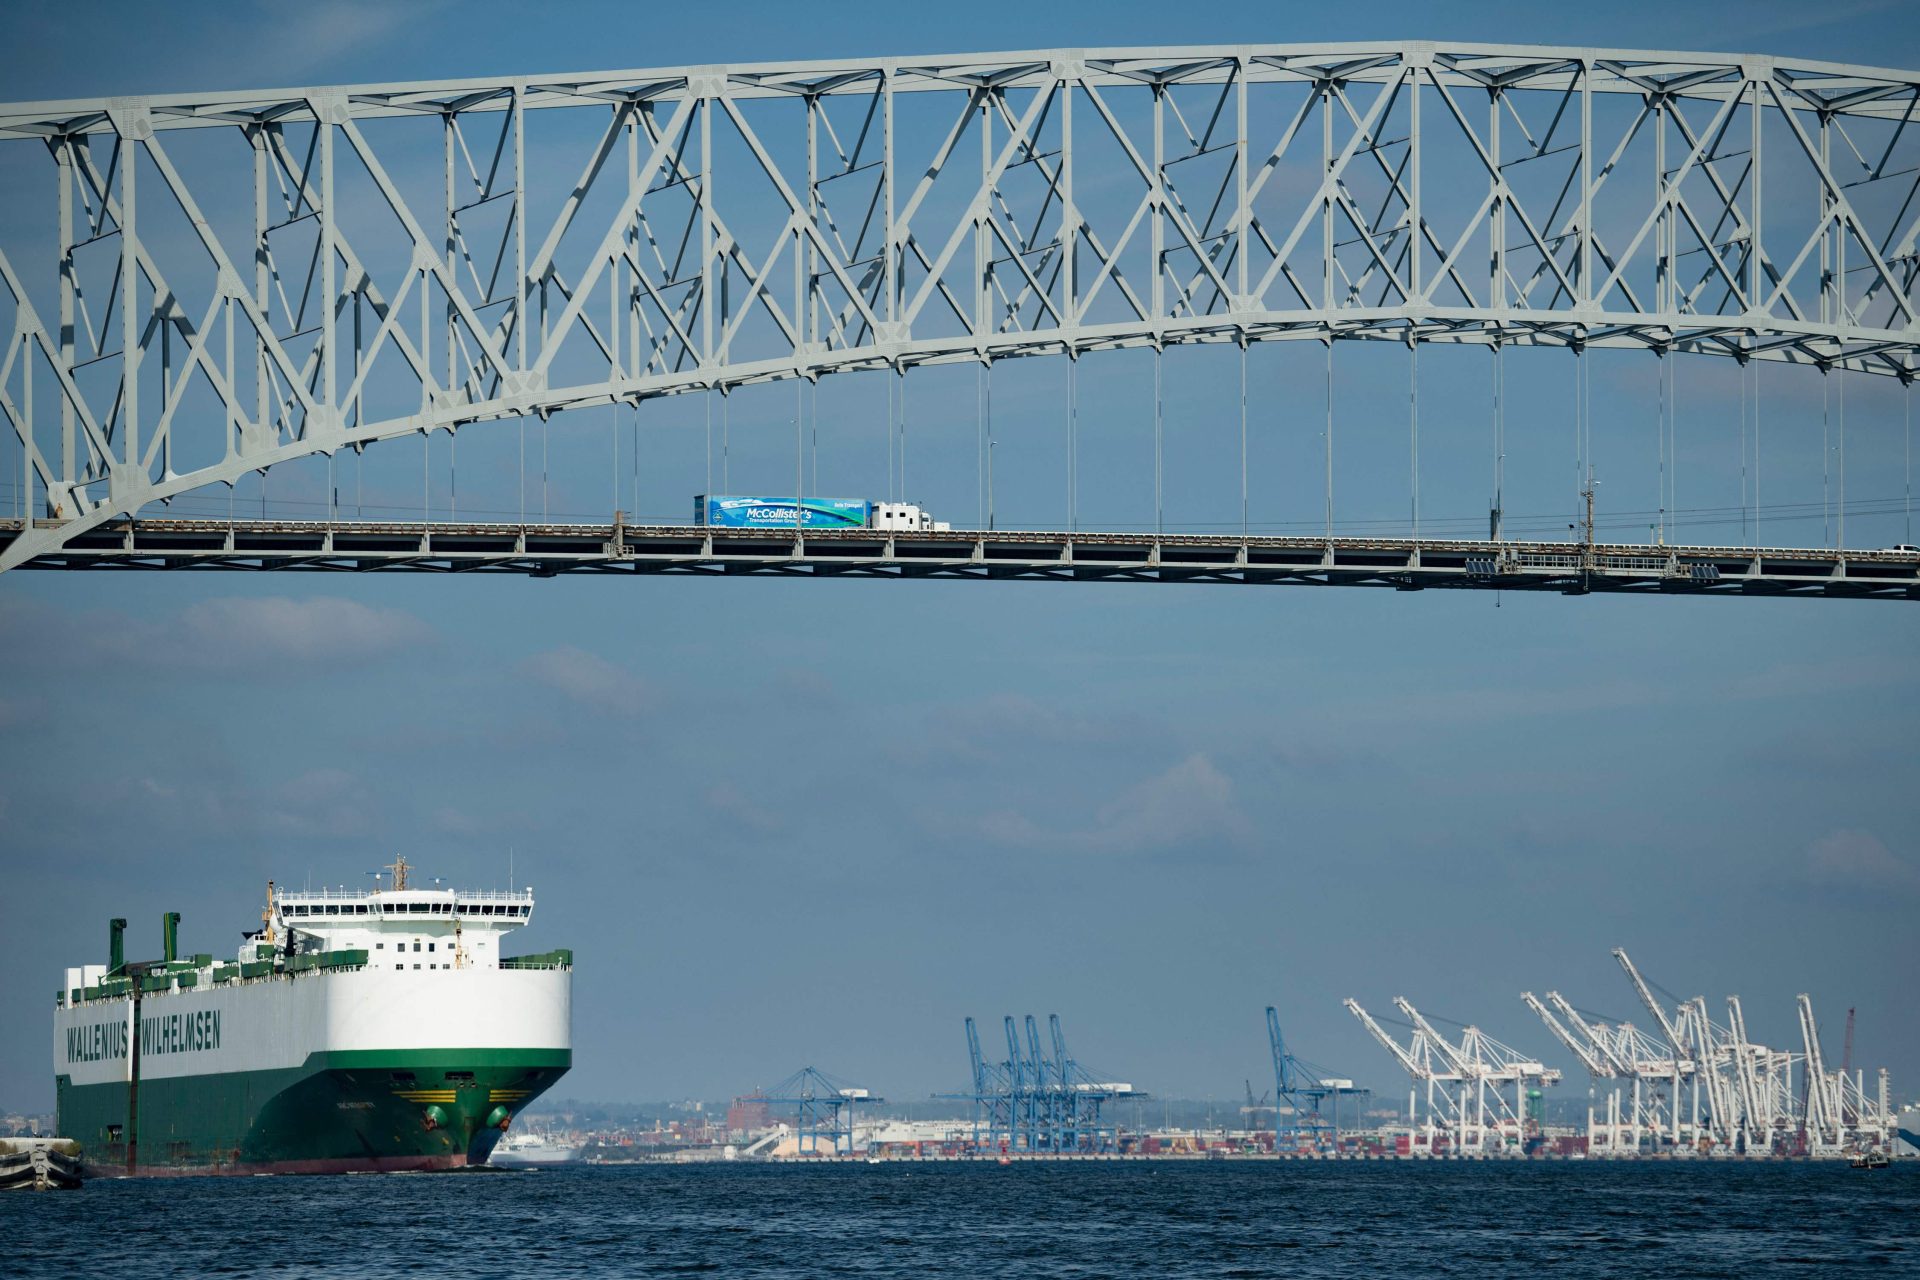 Navio que colidiu com ponte nos EUA transportava químicos perigosos